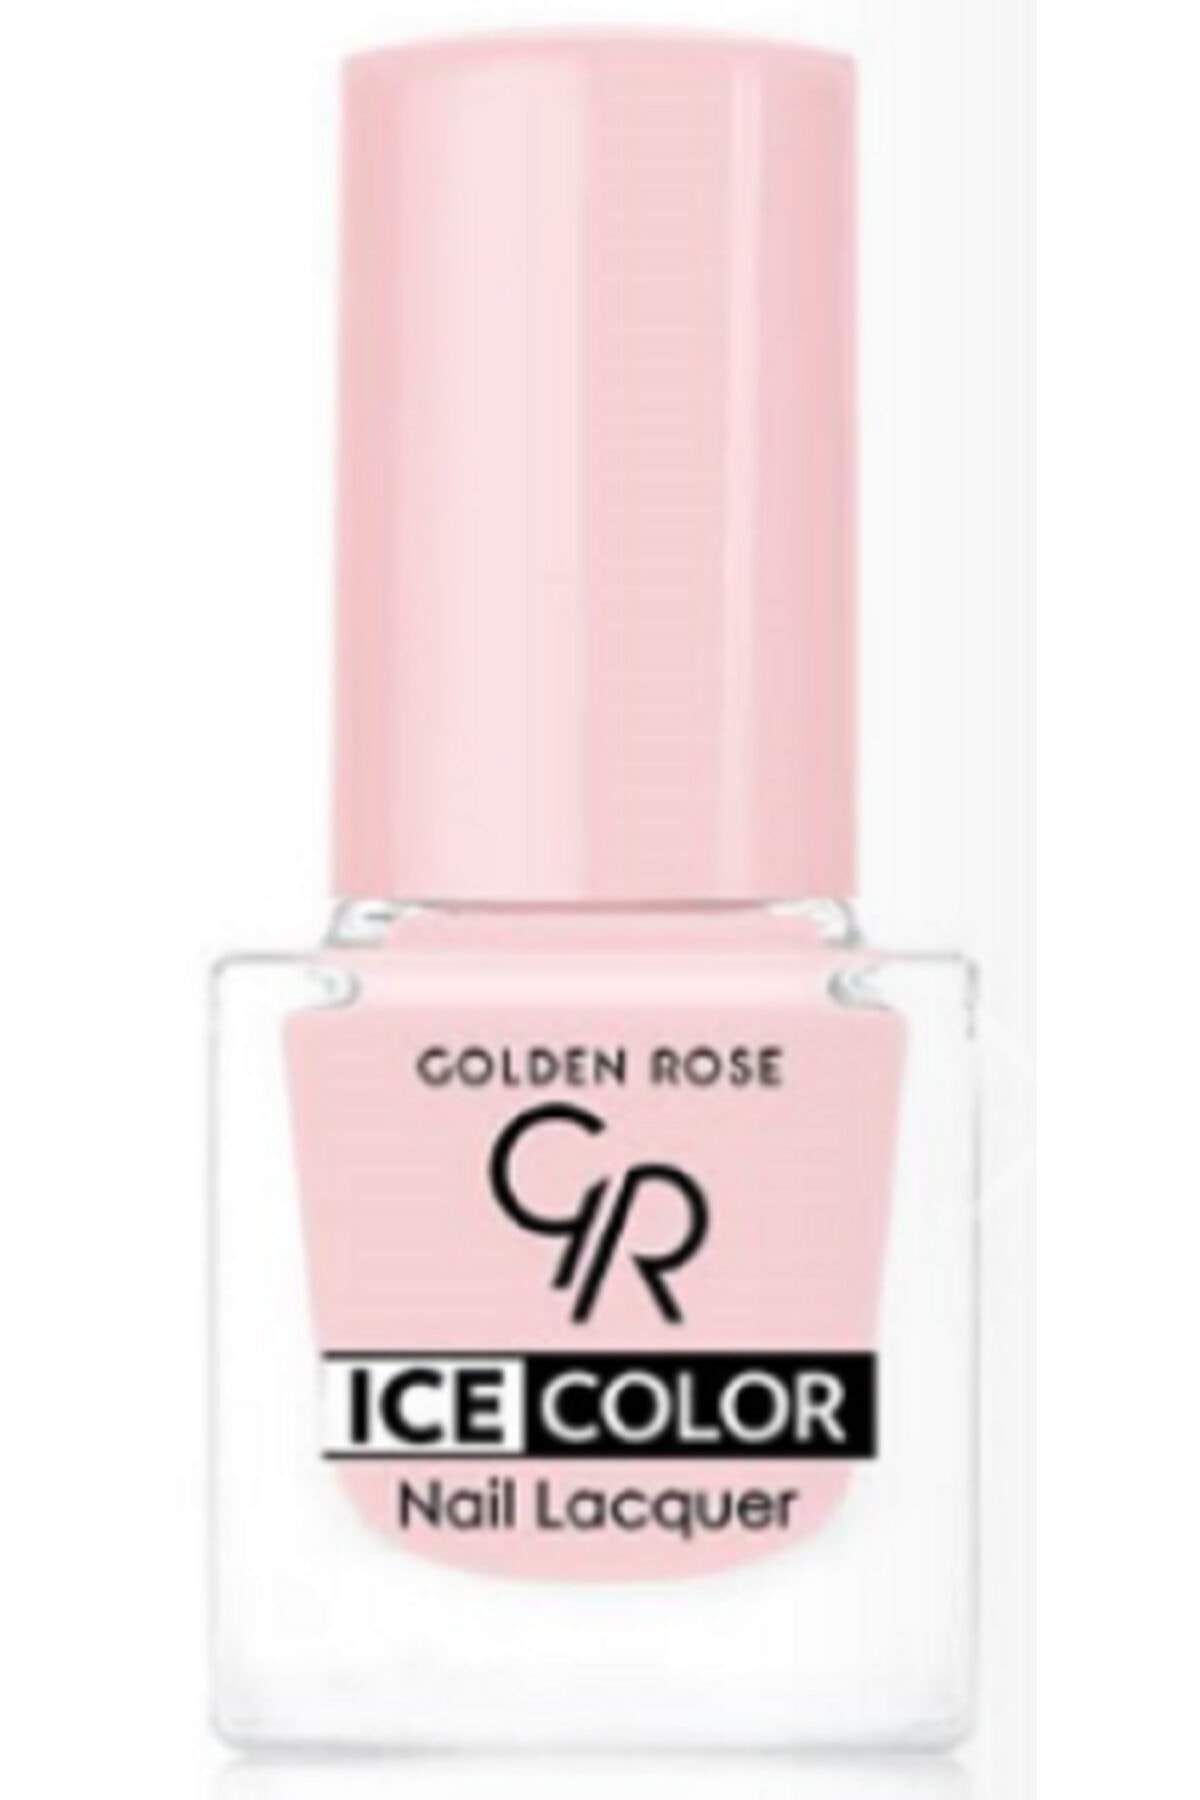 لاک ناخن یخی آیس چیک ICE شماره 177 رنگ صورتی گلدن رز Golden Rose